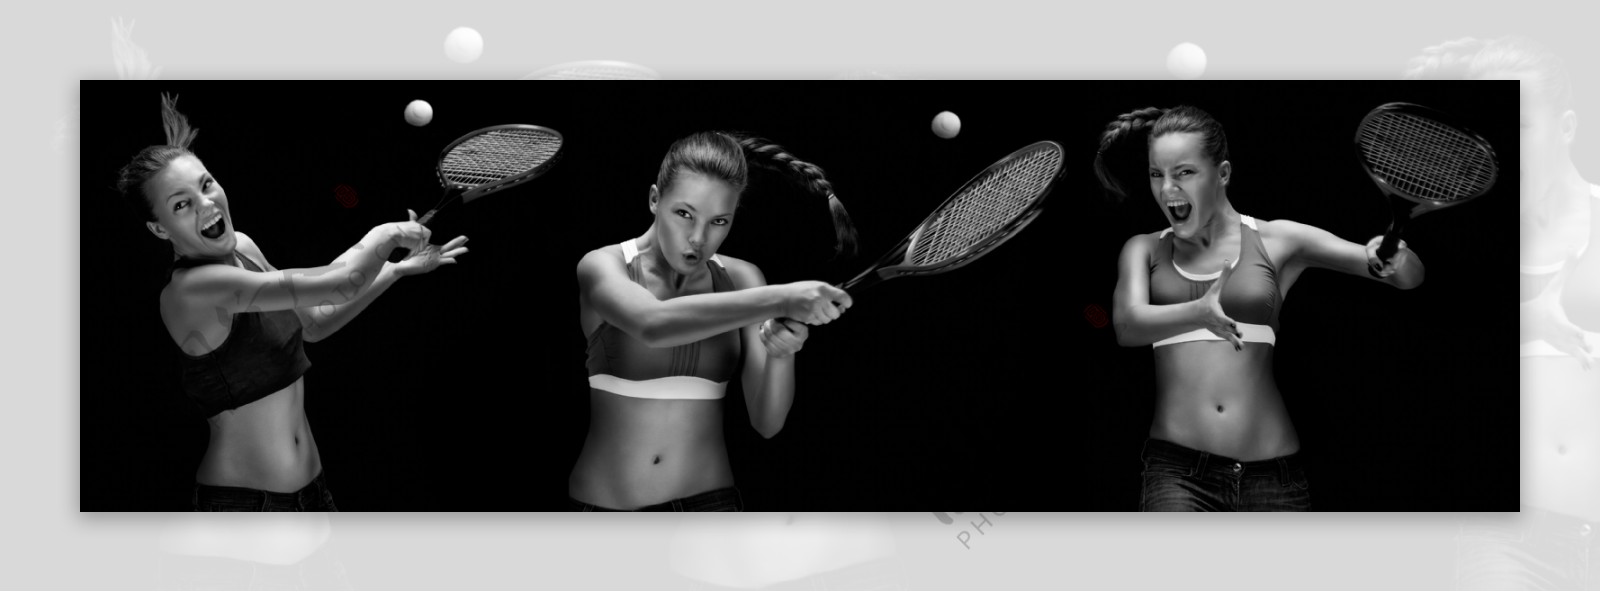 美女网球运动员图片